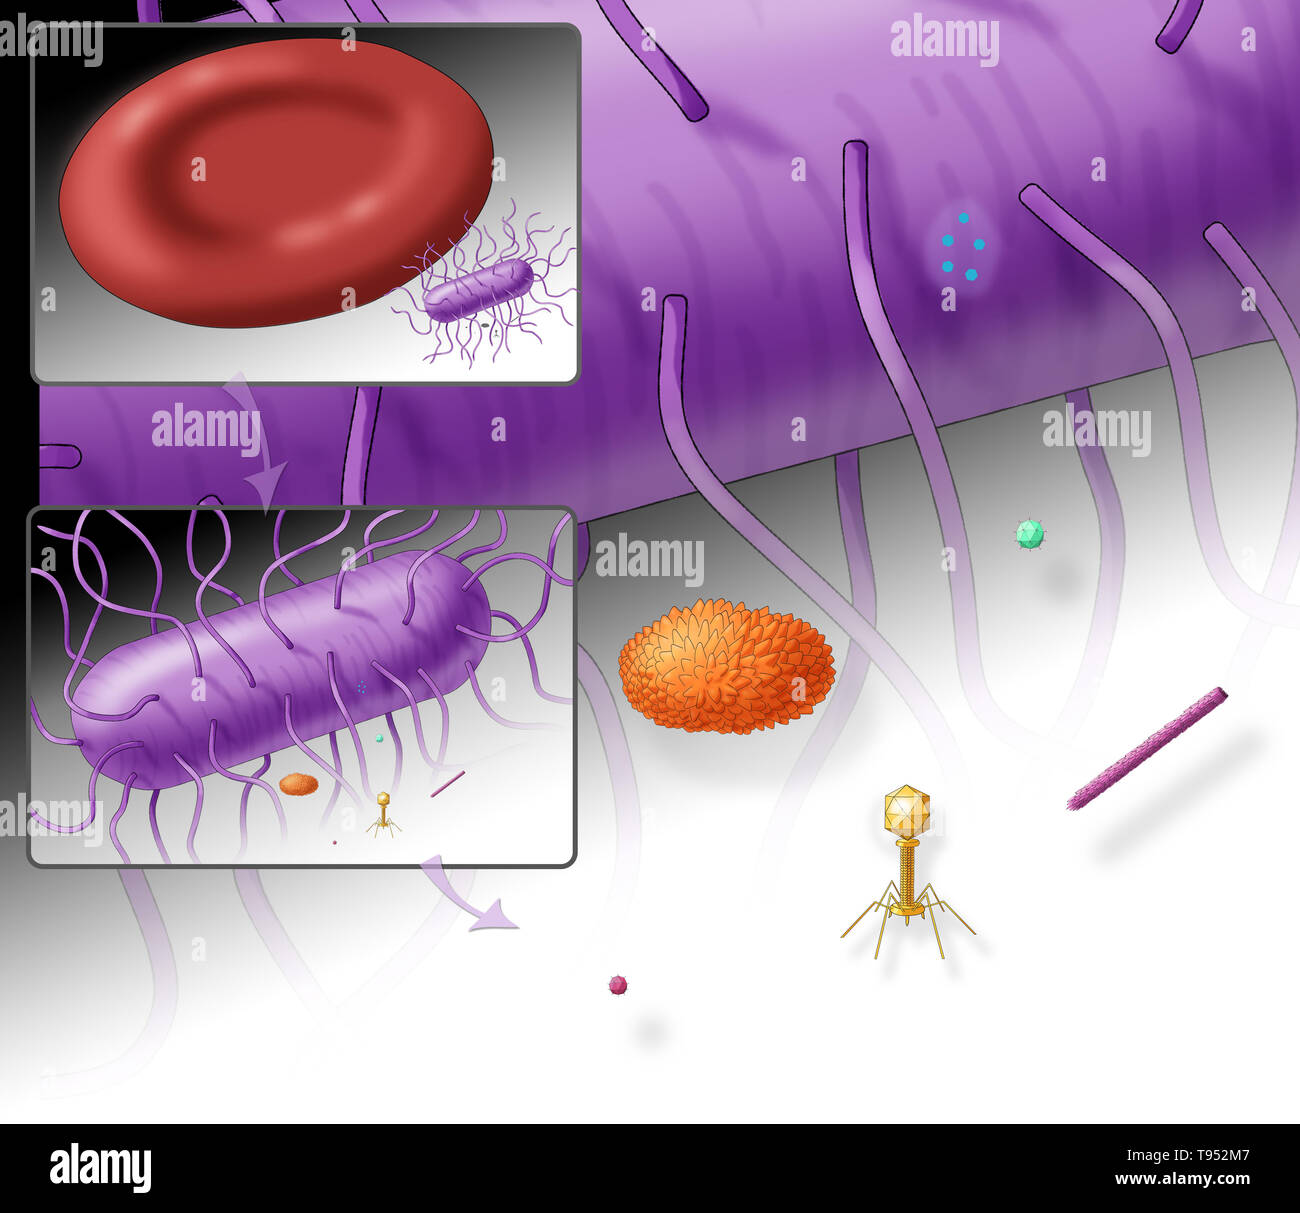 Ilustración que muestra el tamaño relativo de la bacteria E. coli (superior, violeta) y varios virus. Incluye un recuadro que muestra el tamaño relativo de la bacteria E. coli a una célula de sangre roja. Foto de stock